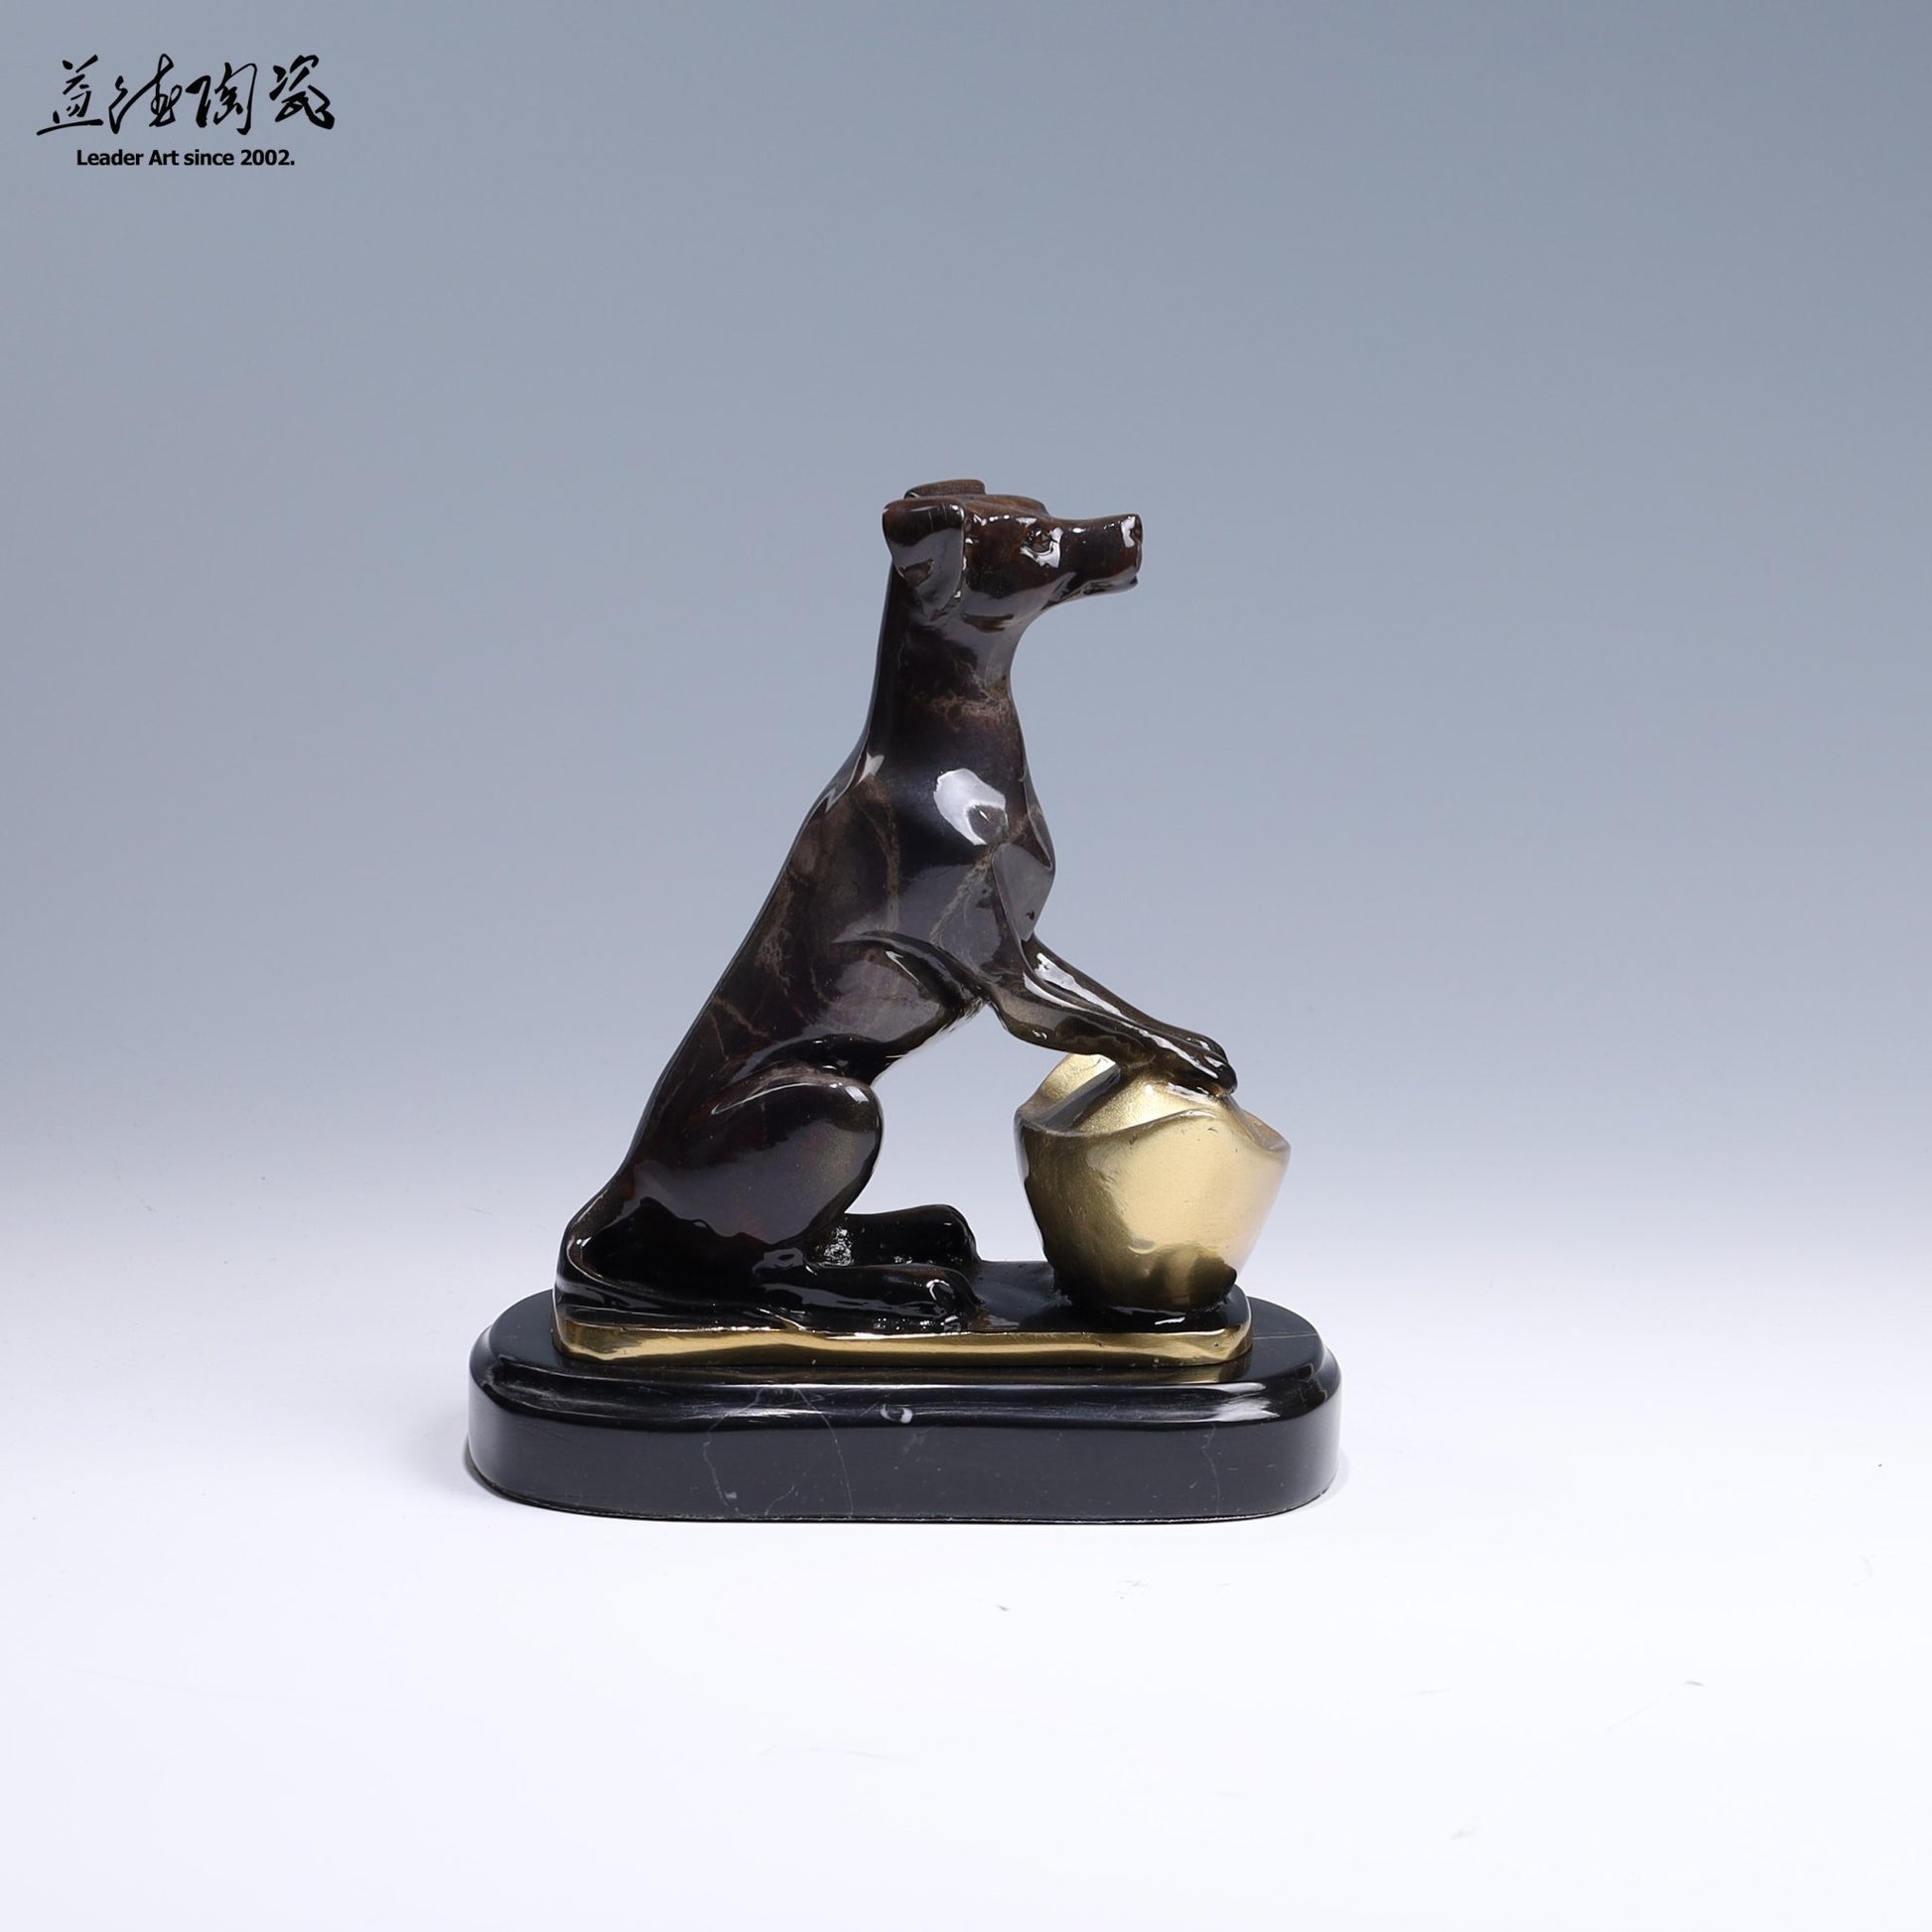 狗來富貴 - 12生肖系列銅雕 - LEADER 益德 | 居家設計藝品・人文茶器・空間美學作品